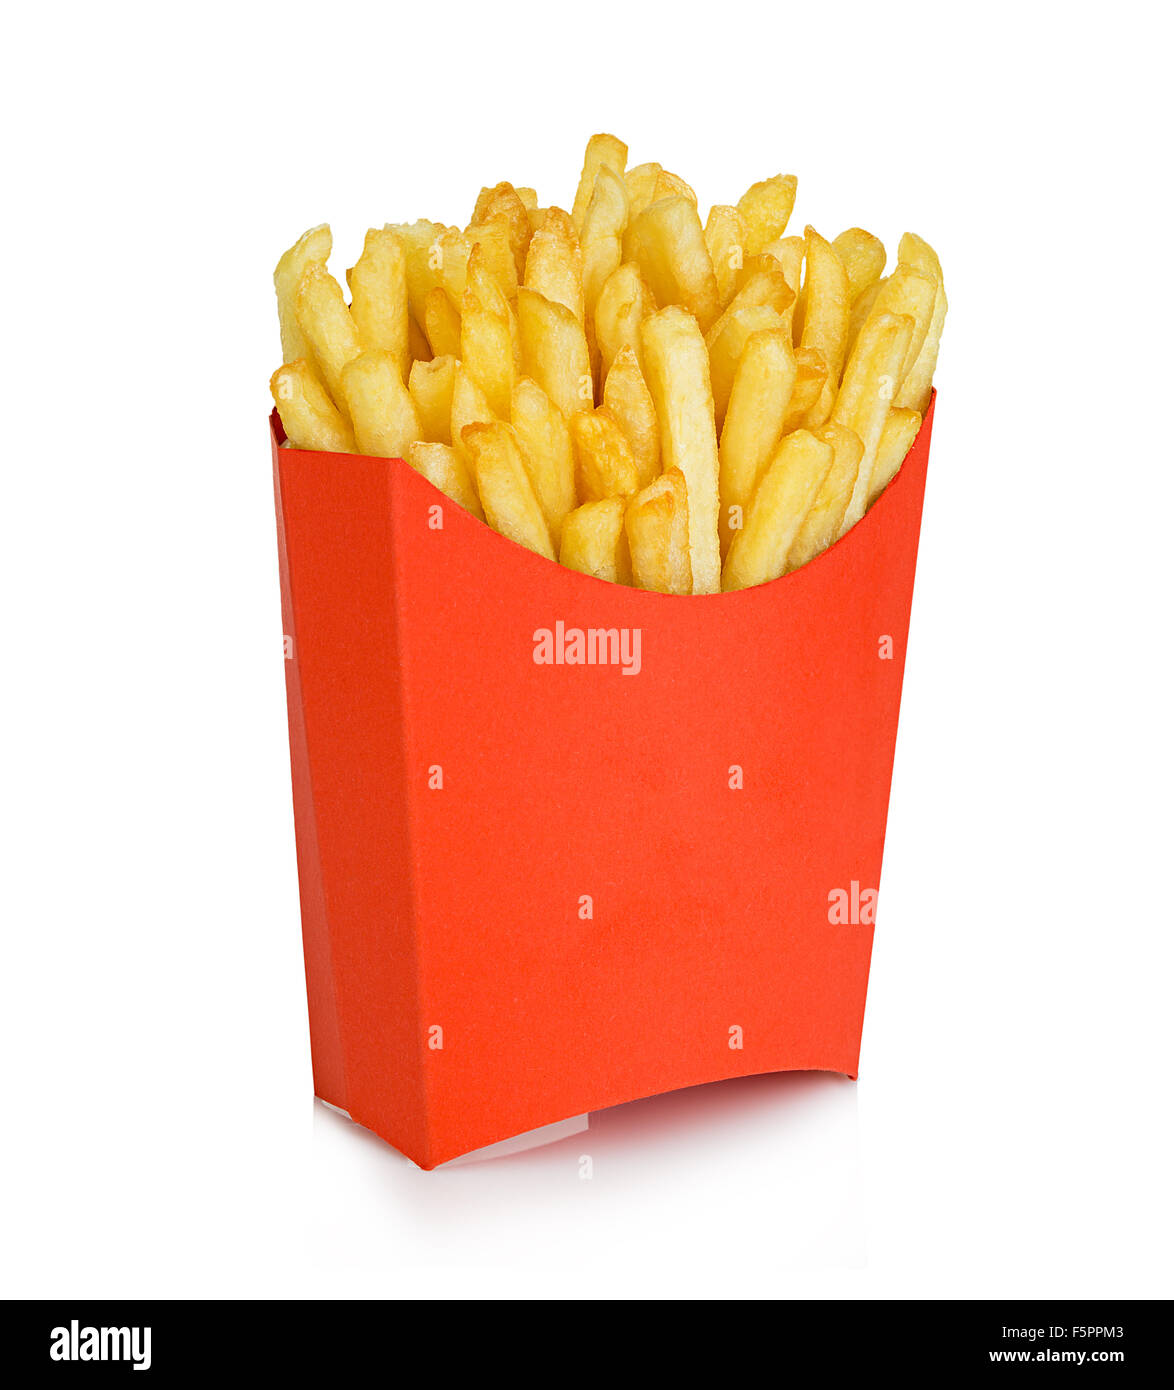 Kartoffeln Pommes frites in einem roten Karton isoliert auf einem weißen Hintergrund. Fast-Food. Stockfoto